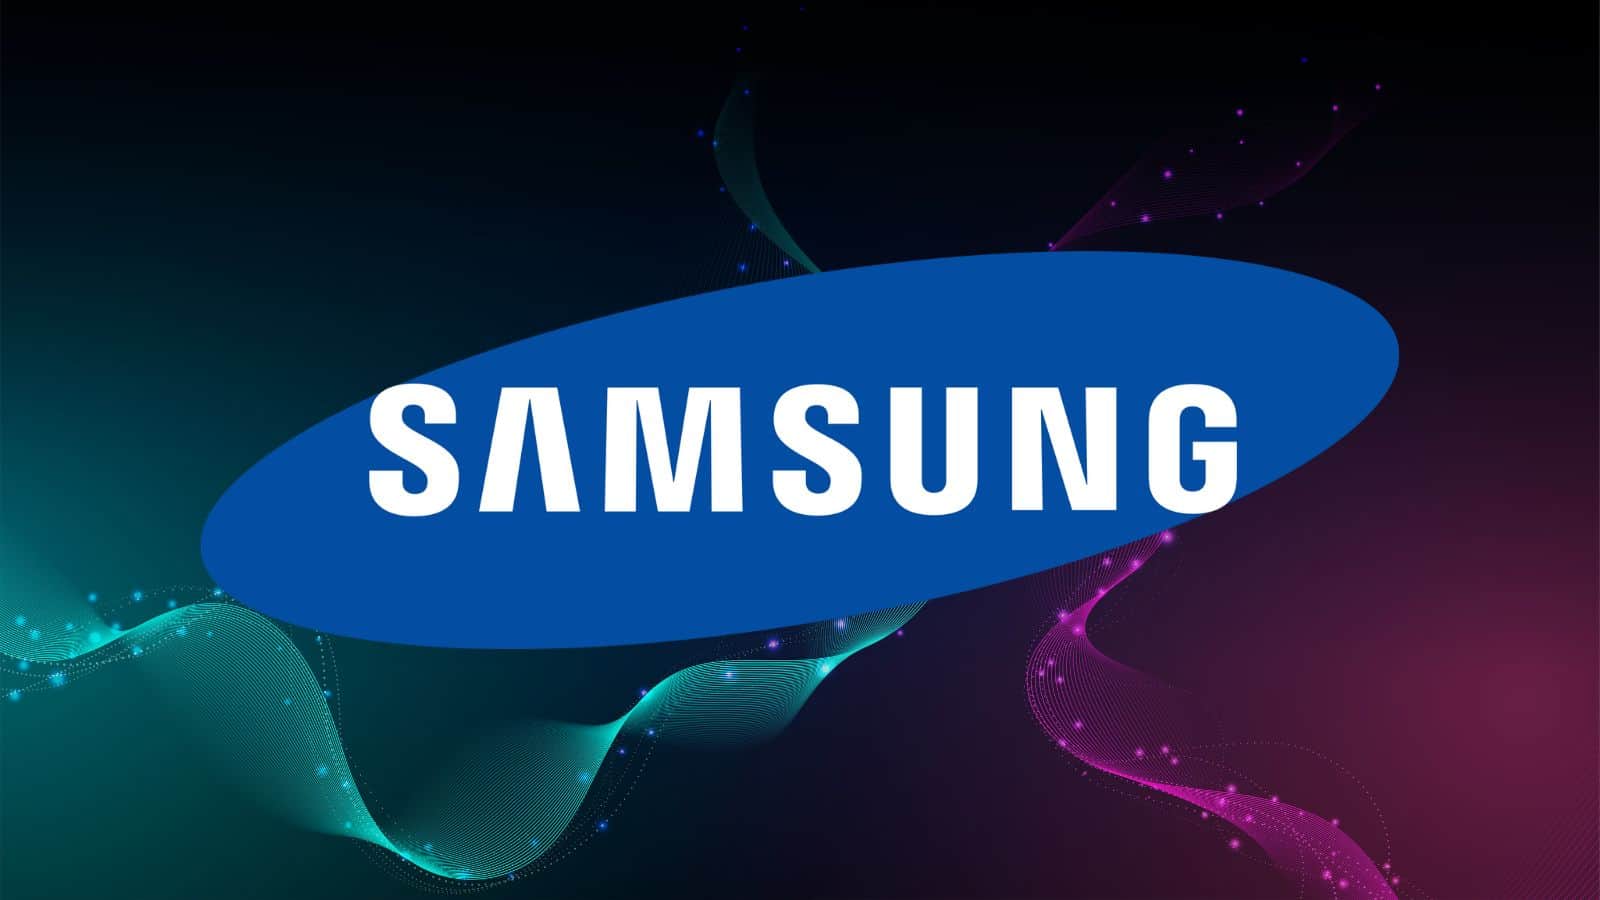 Samsung rimedia all'impatto delle fabbriche con l'acqua di fogna?